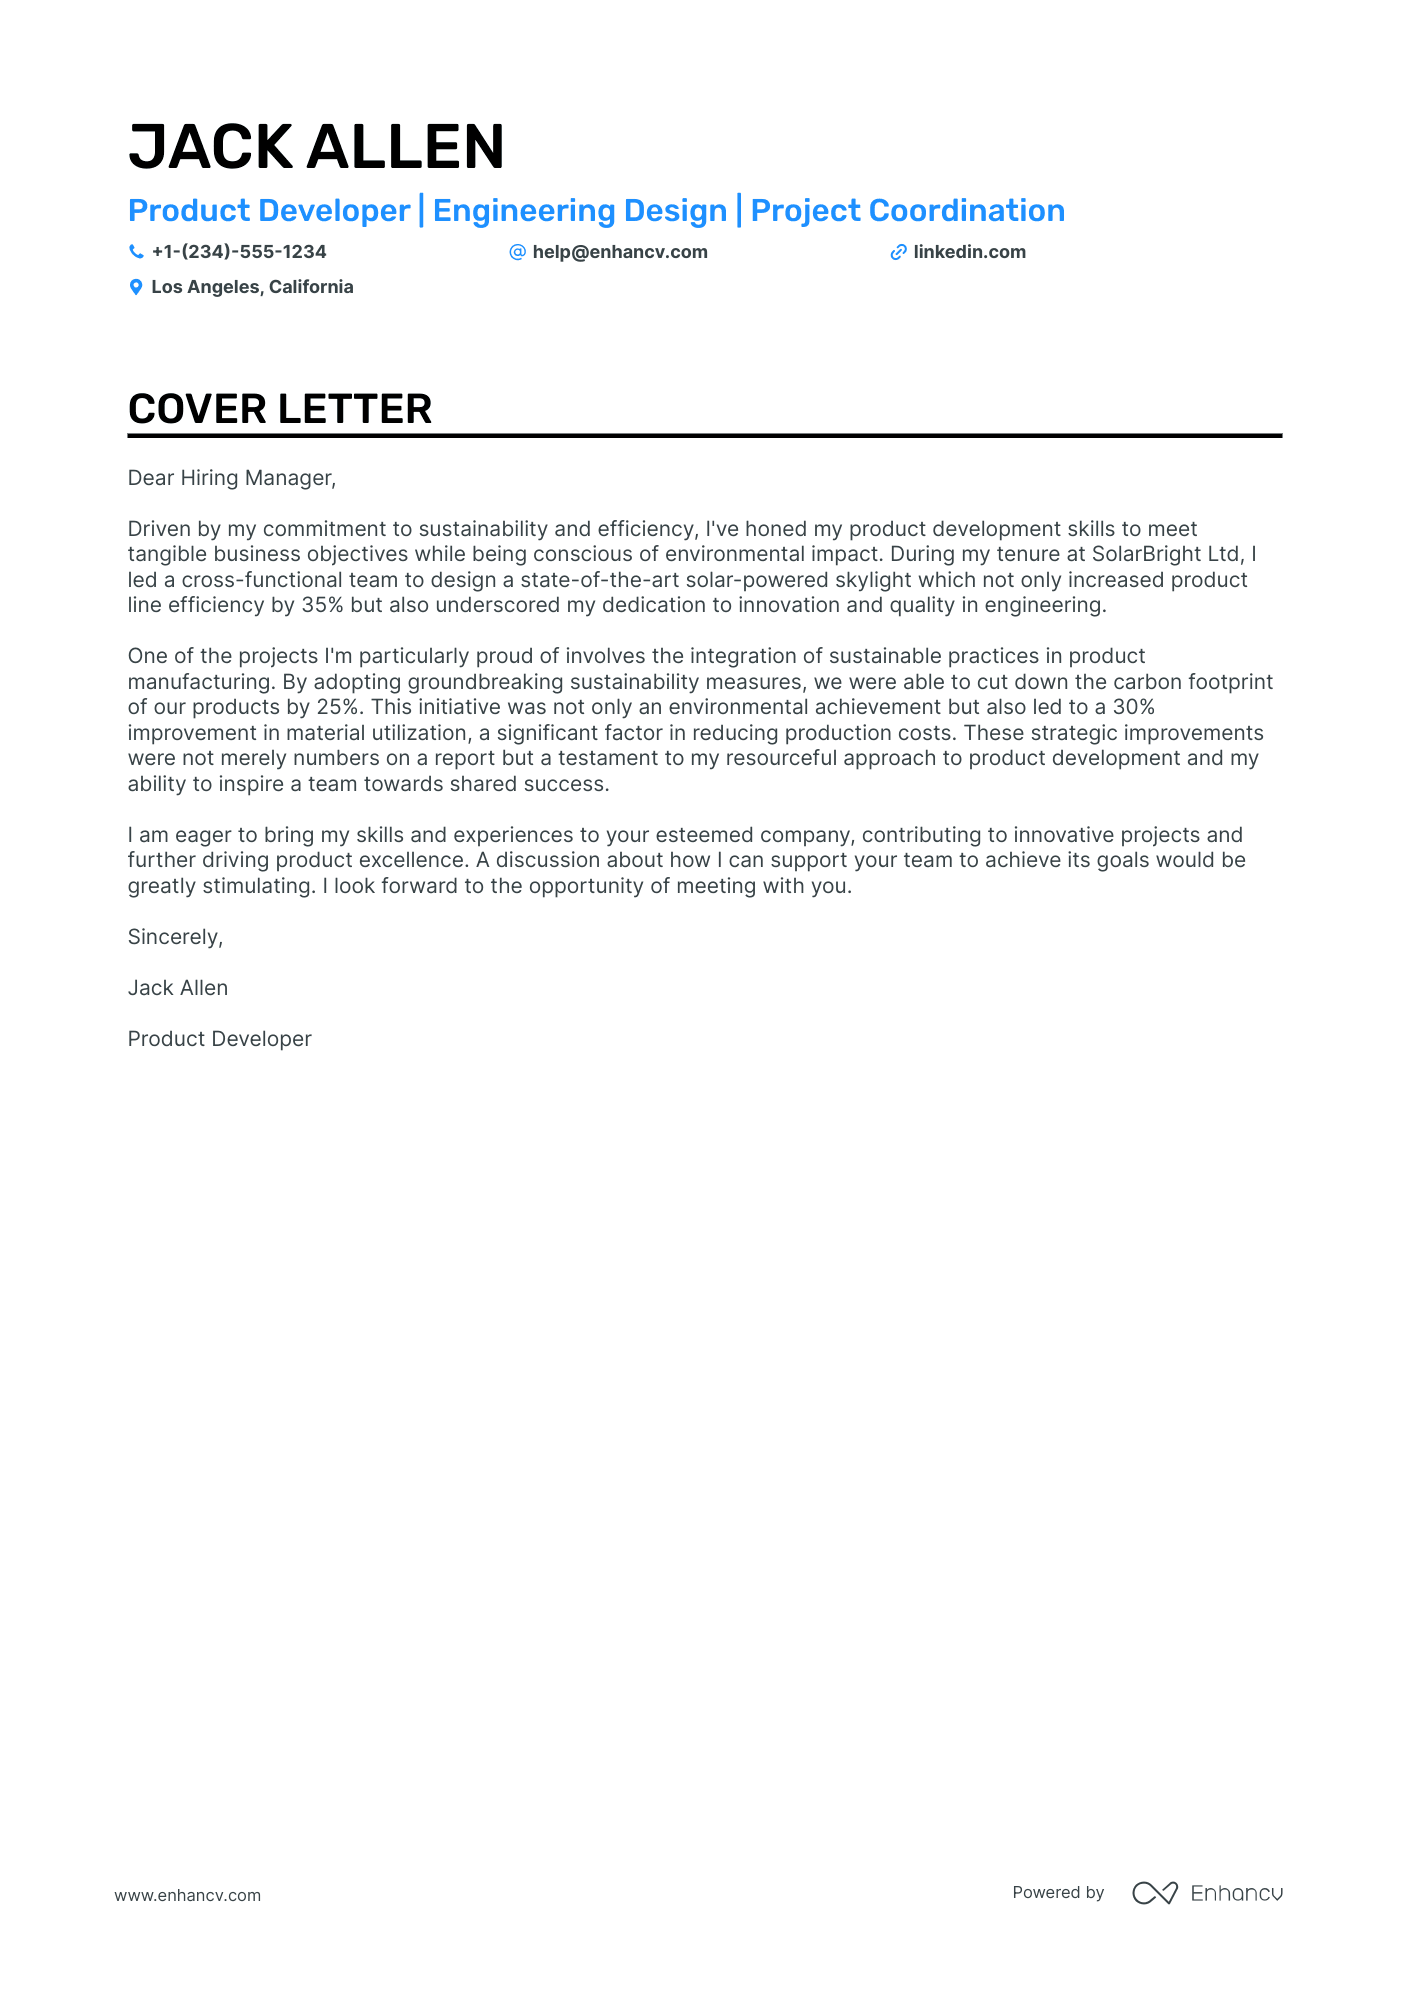 Product Developer cover letter